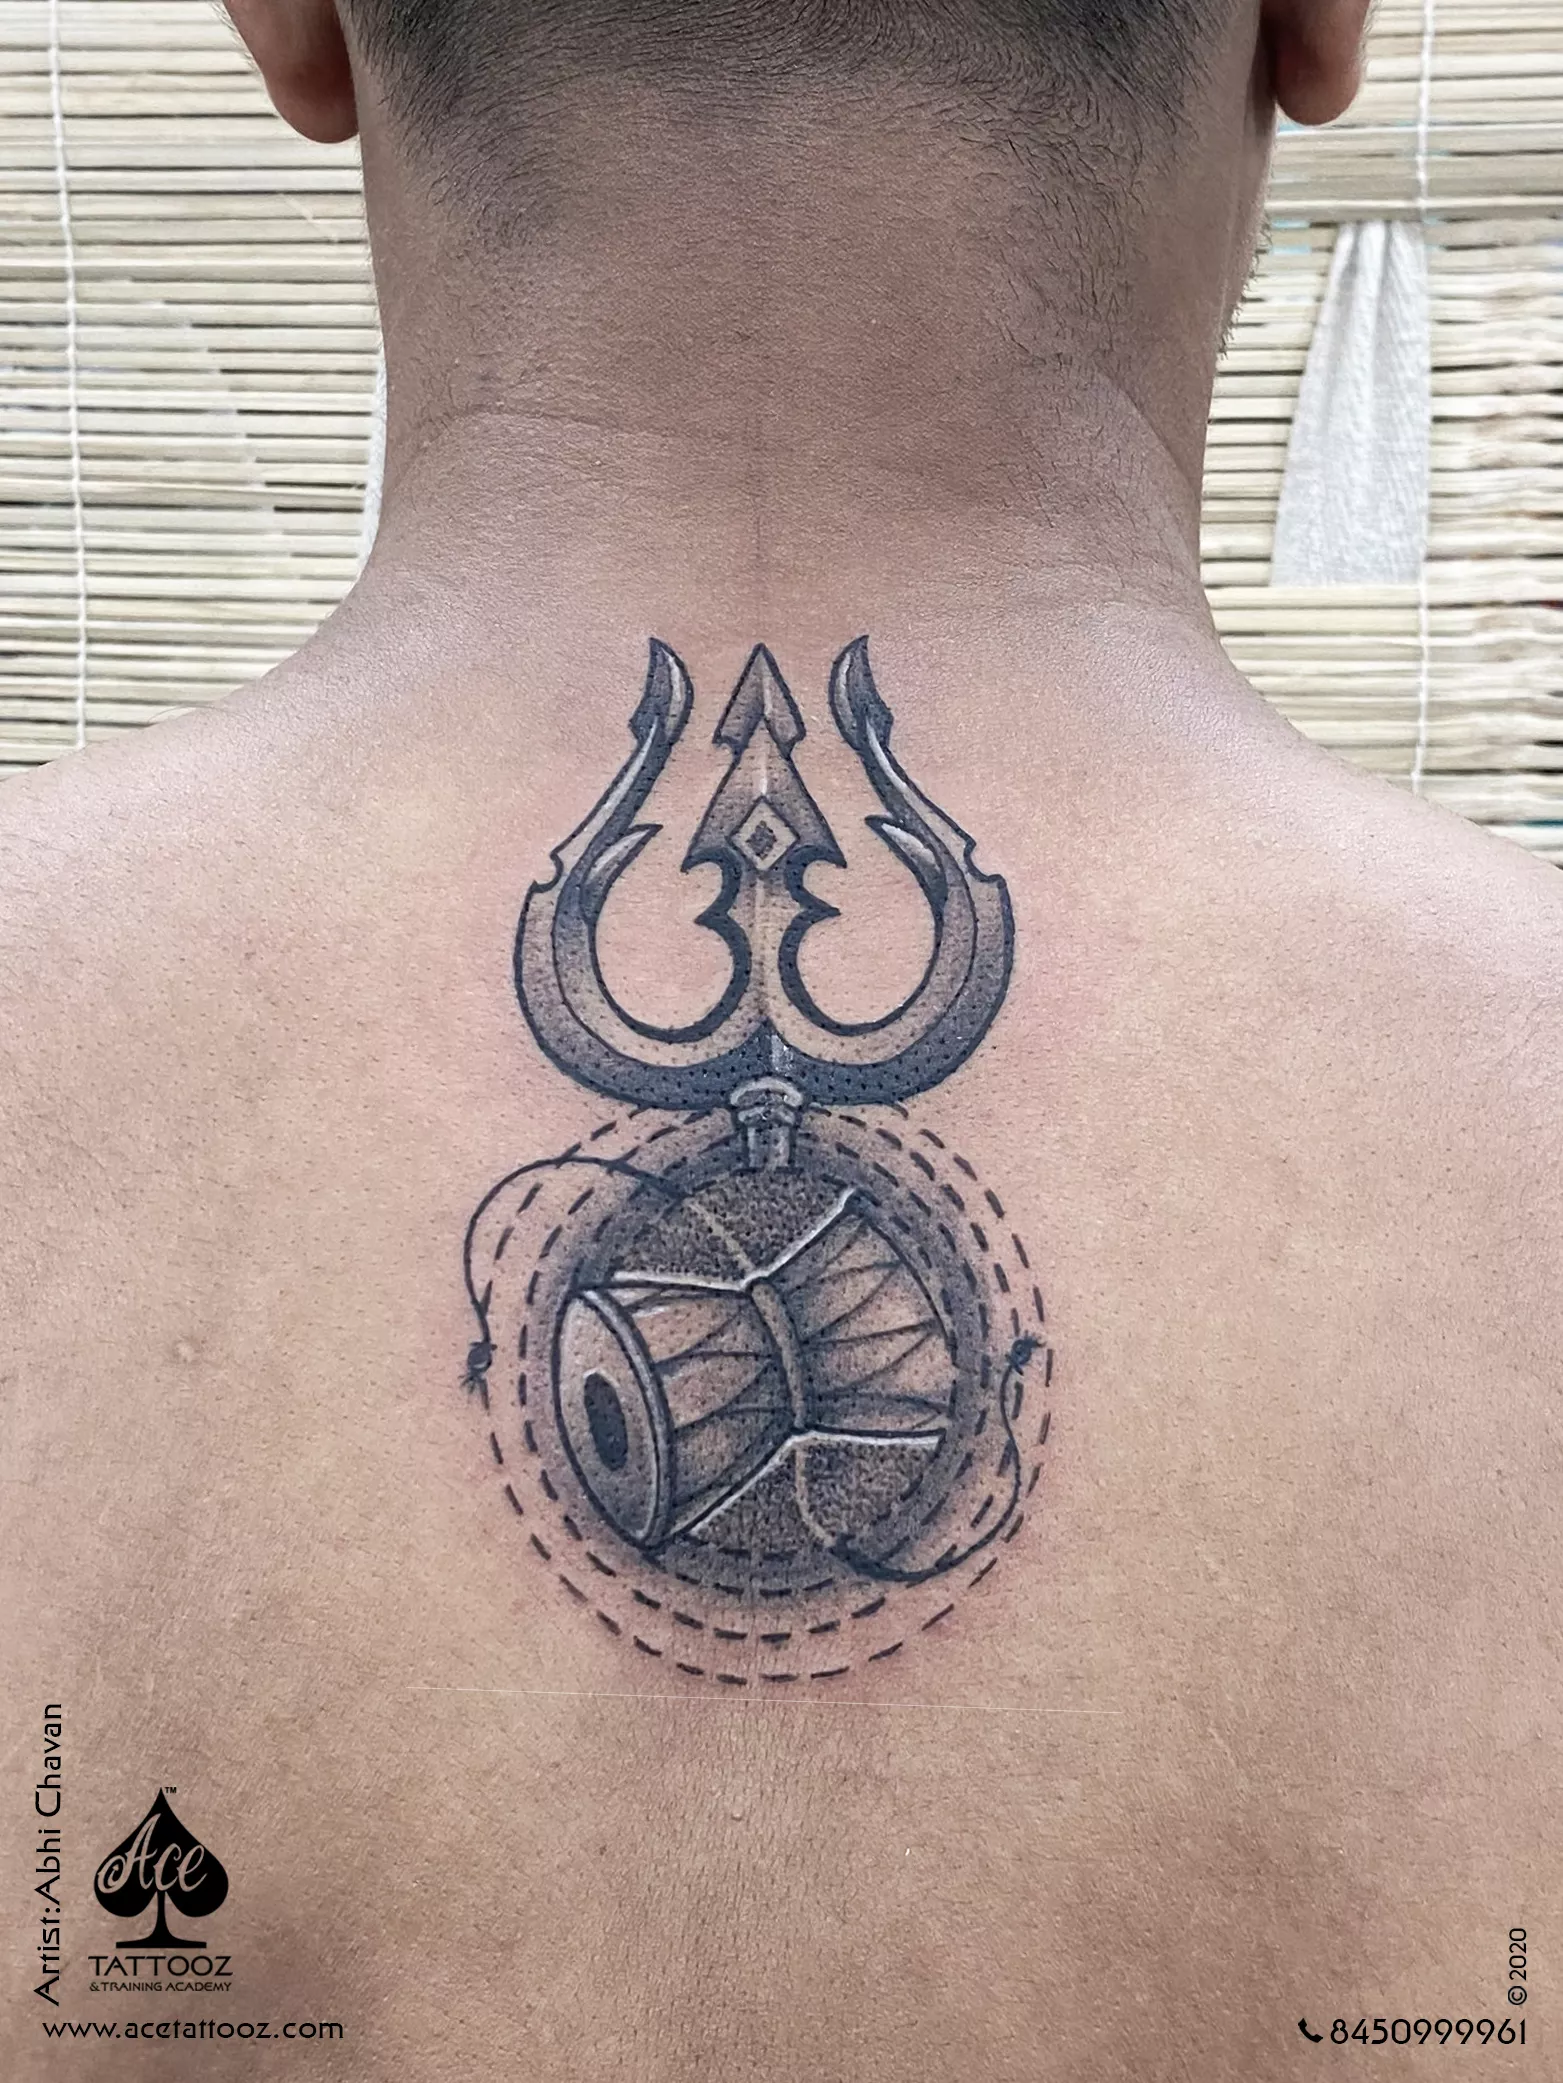 Trishul damru Mahadev tattoo  The Art Ink Tattoo Studio  Facebook